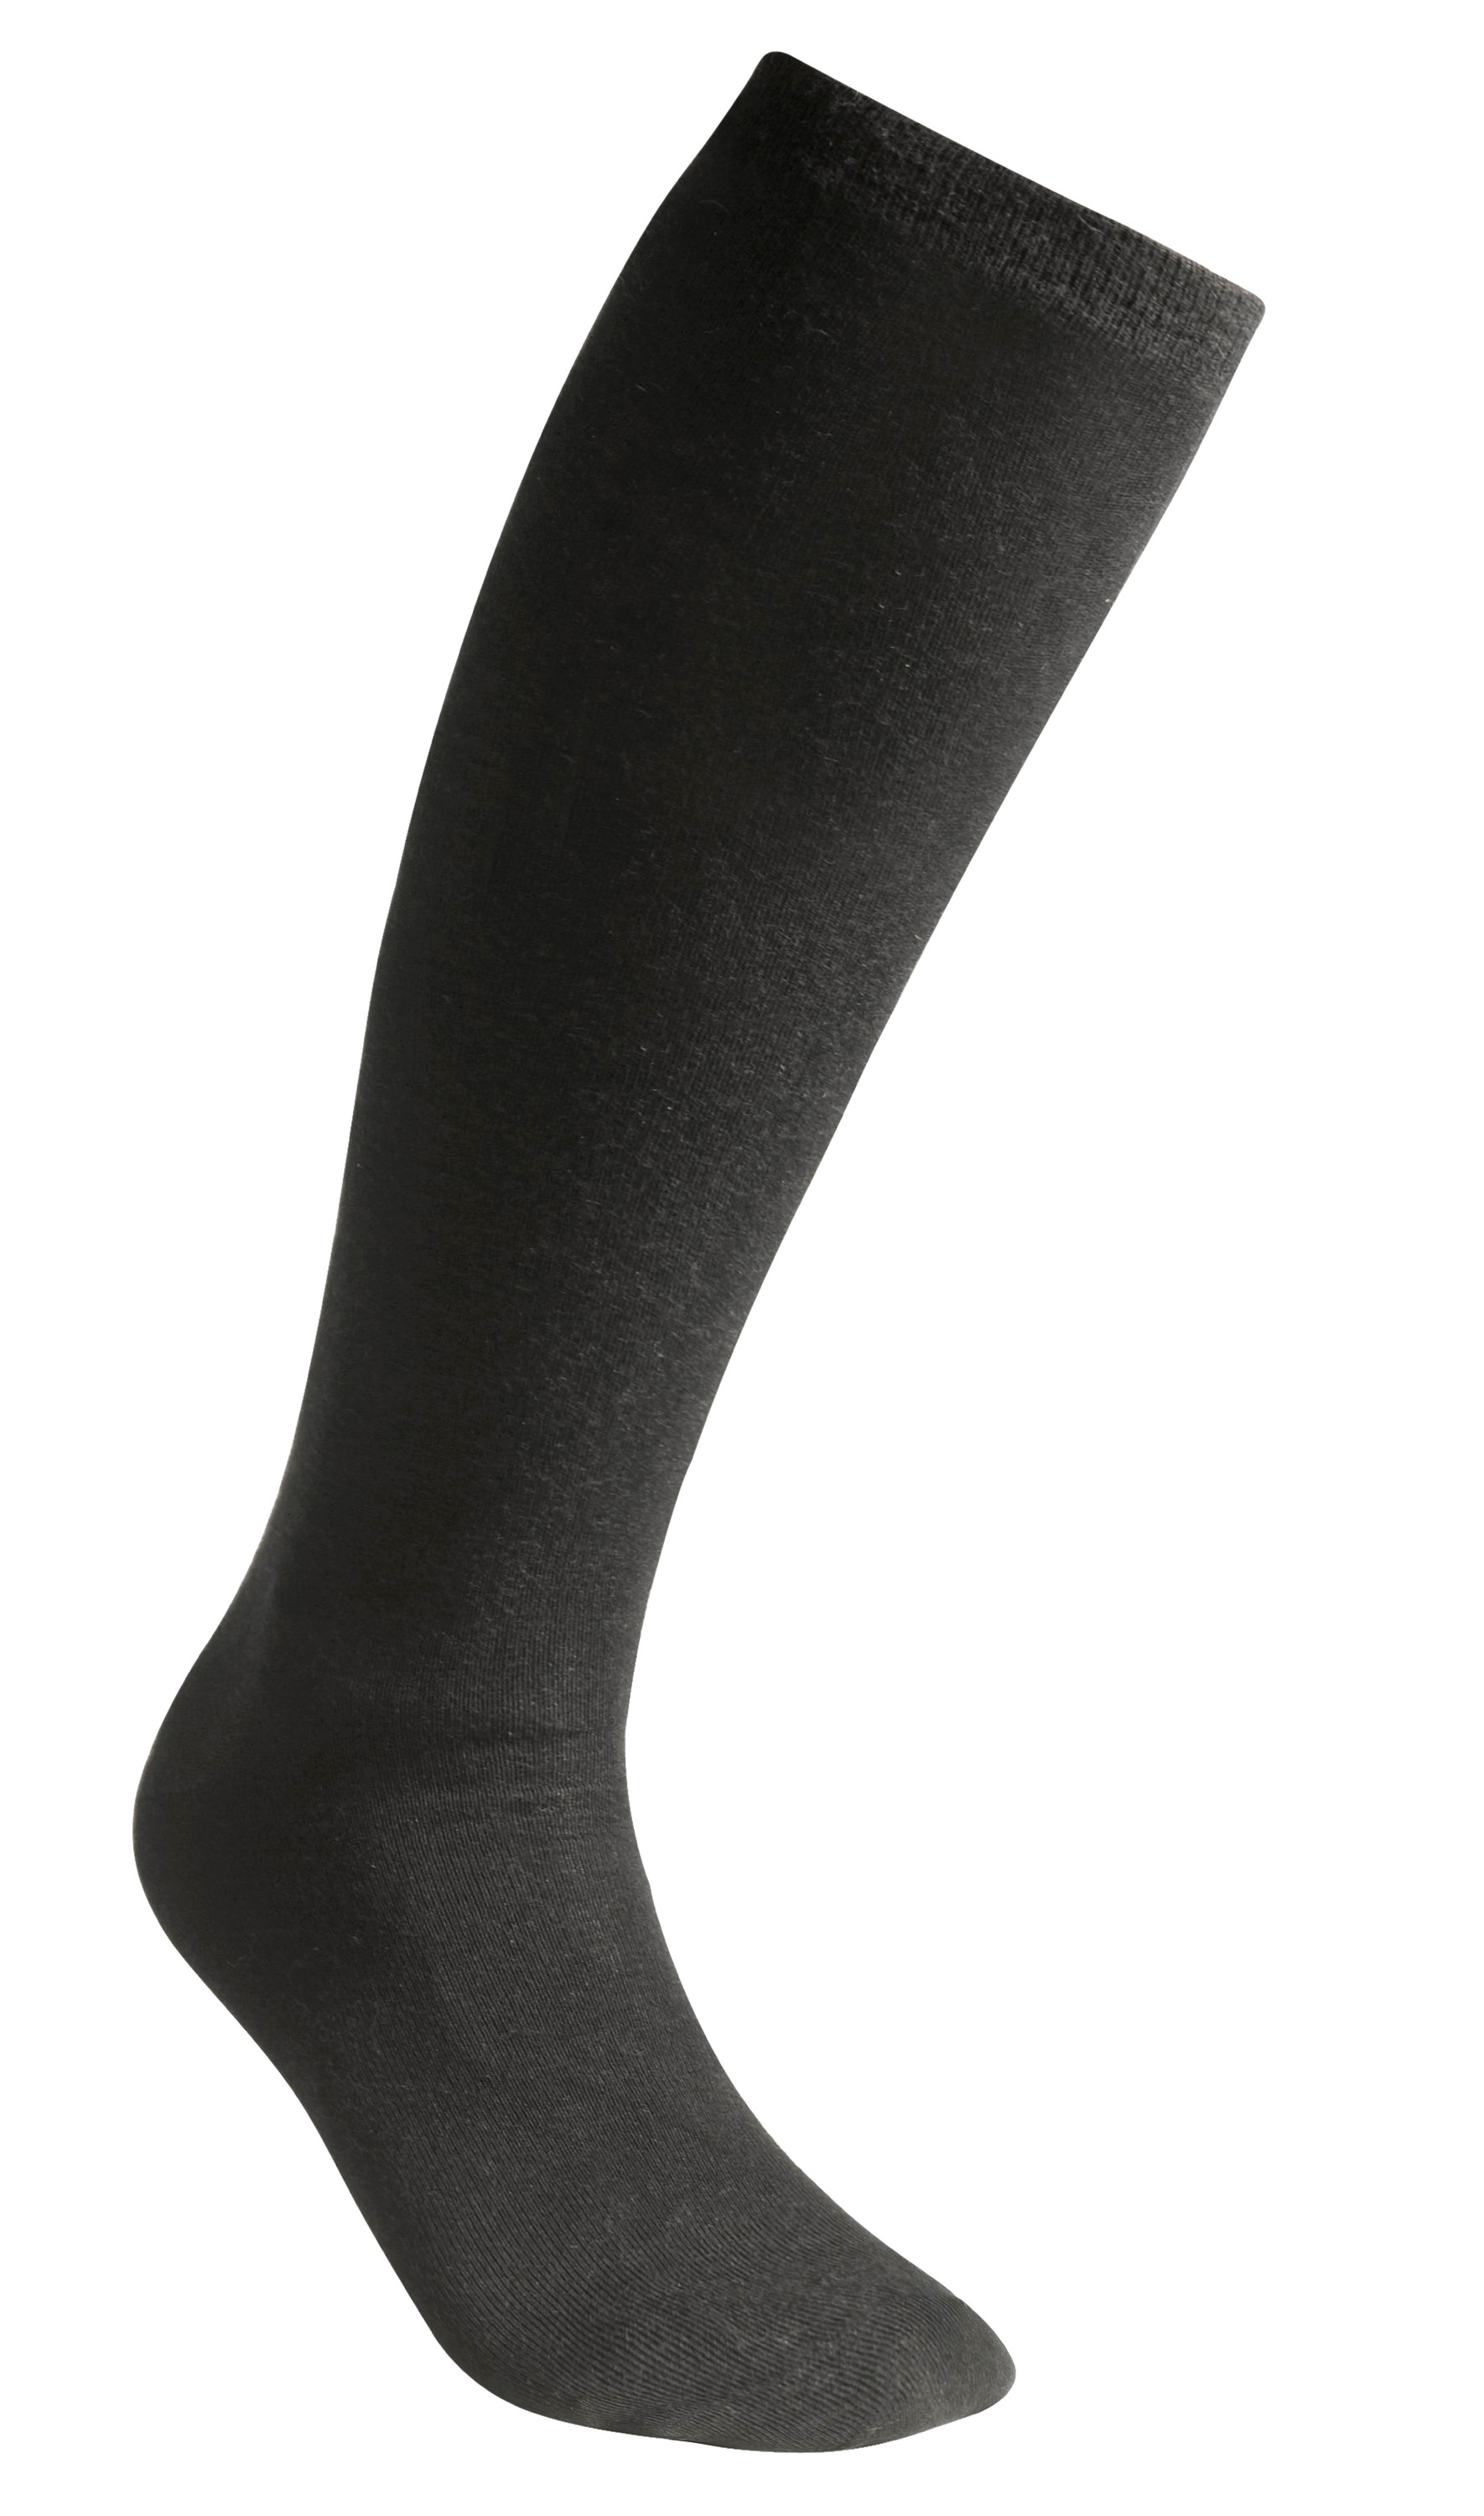 Socks Knee-High Liner - Black